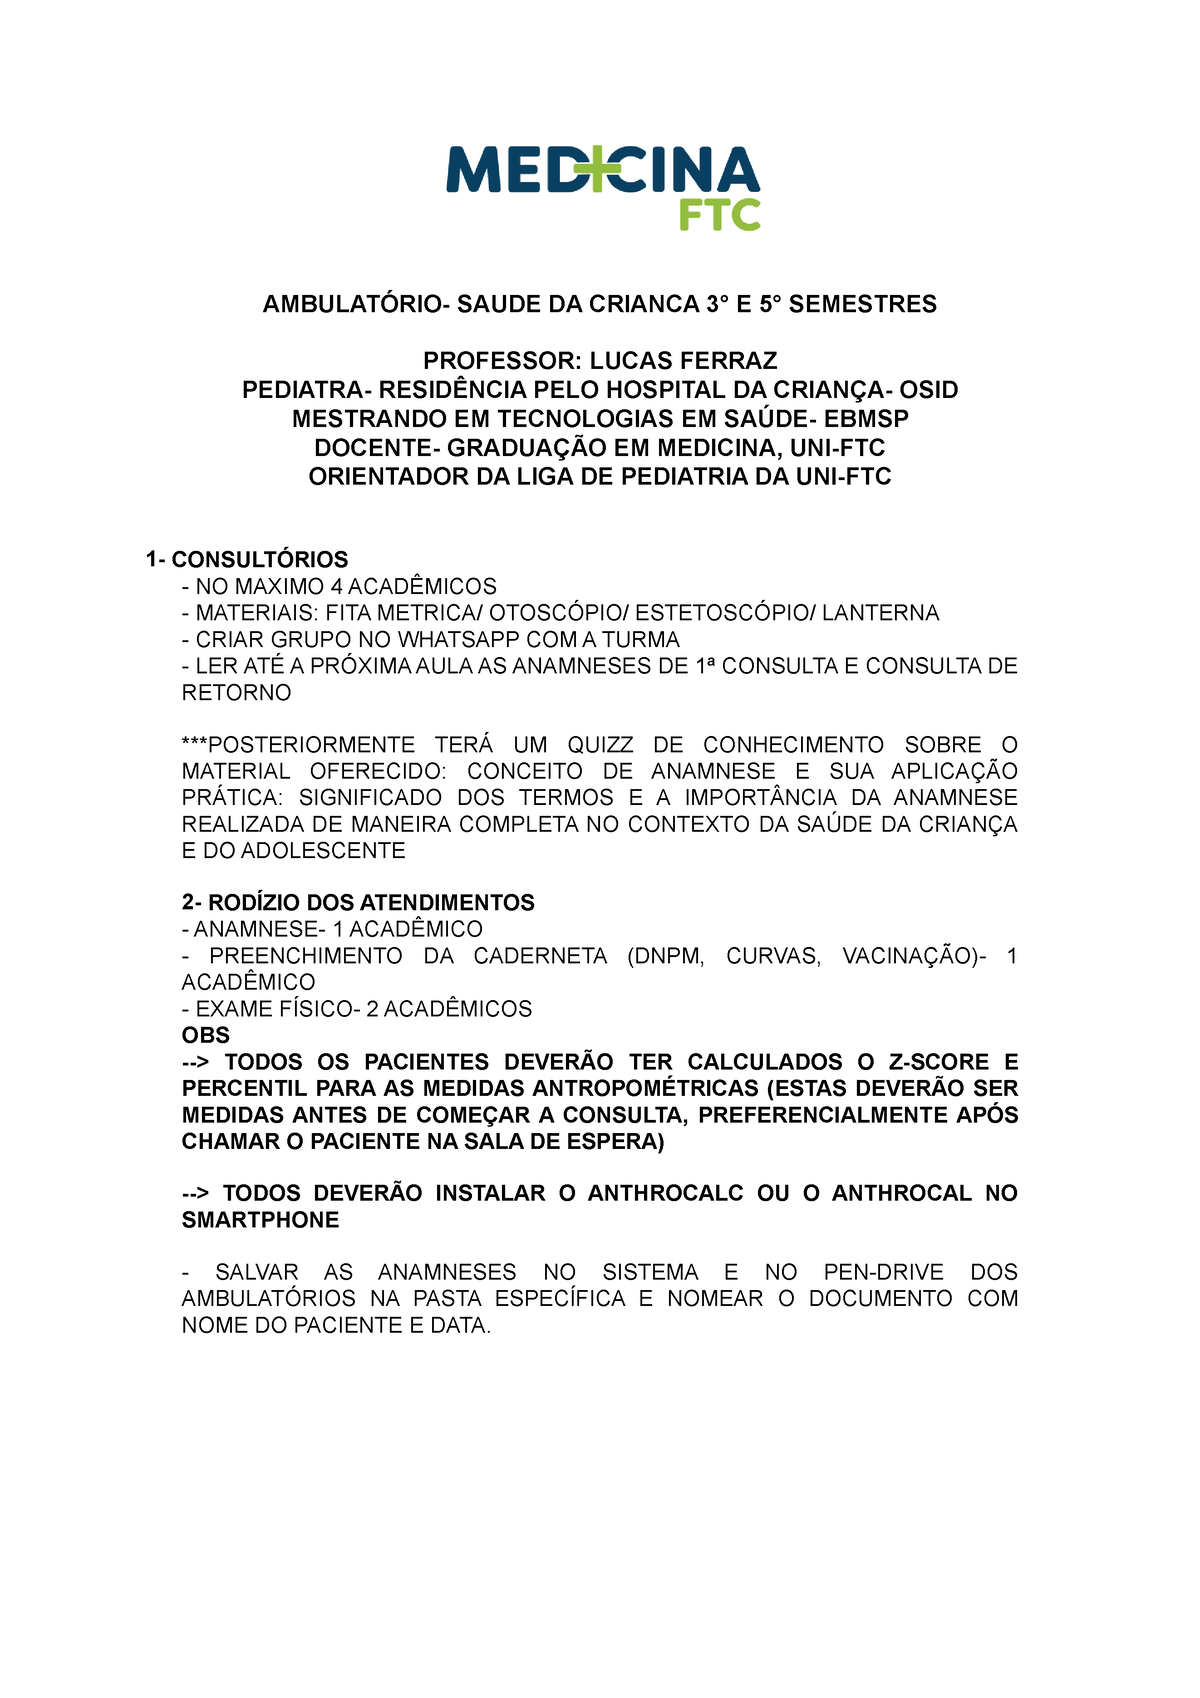 Orientações Ambulatórios - AMBULATÓRIO- SAUDE DA CRIANCA 3° E 5° SEMESTRES  PROFESSOR: LUCAS FERRAZ - Studocu